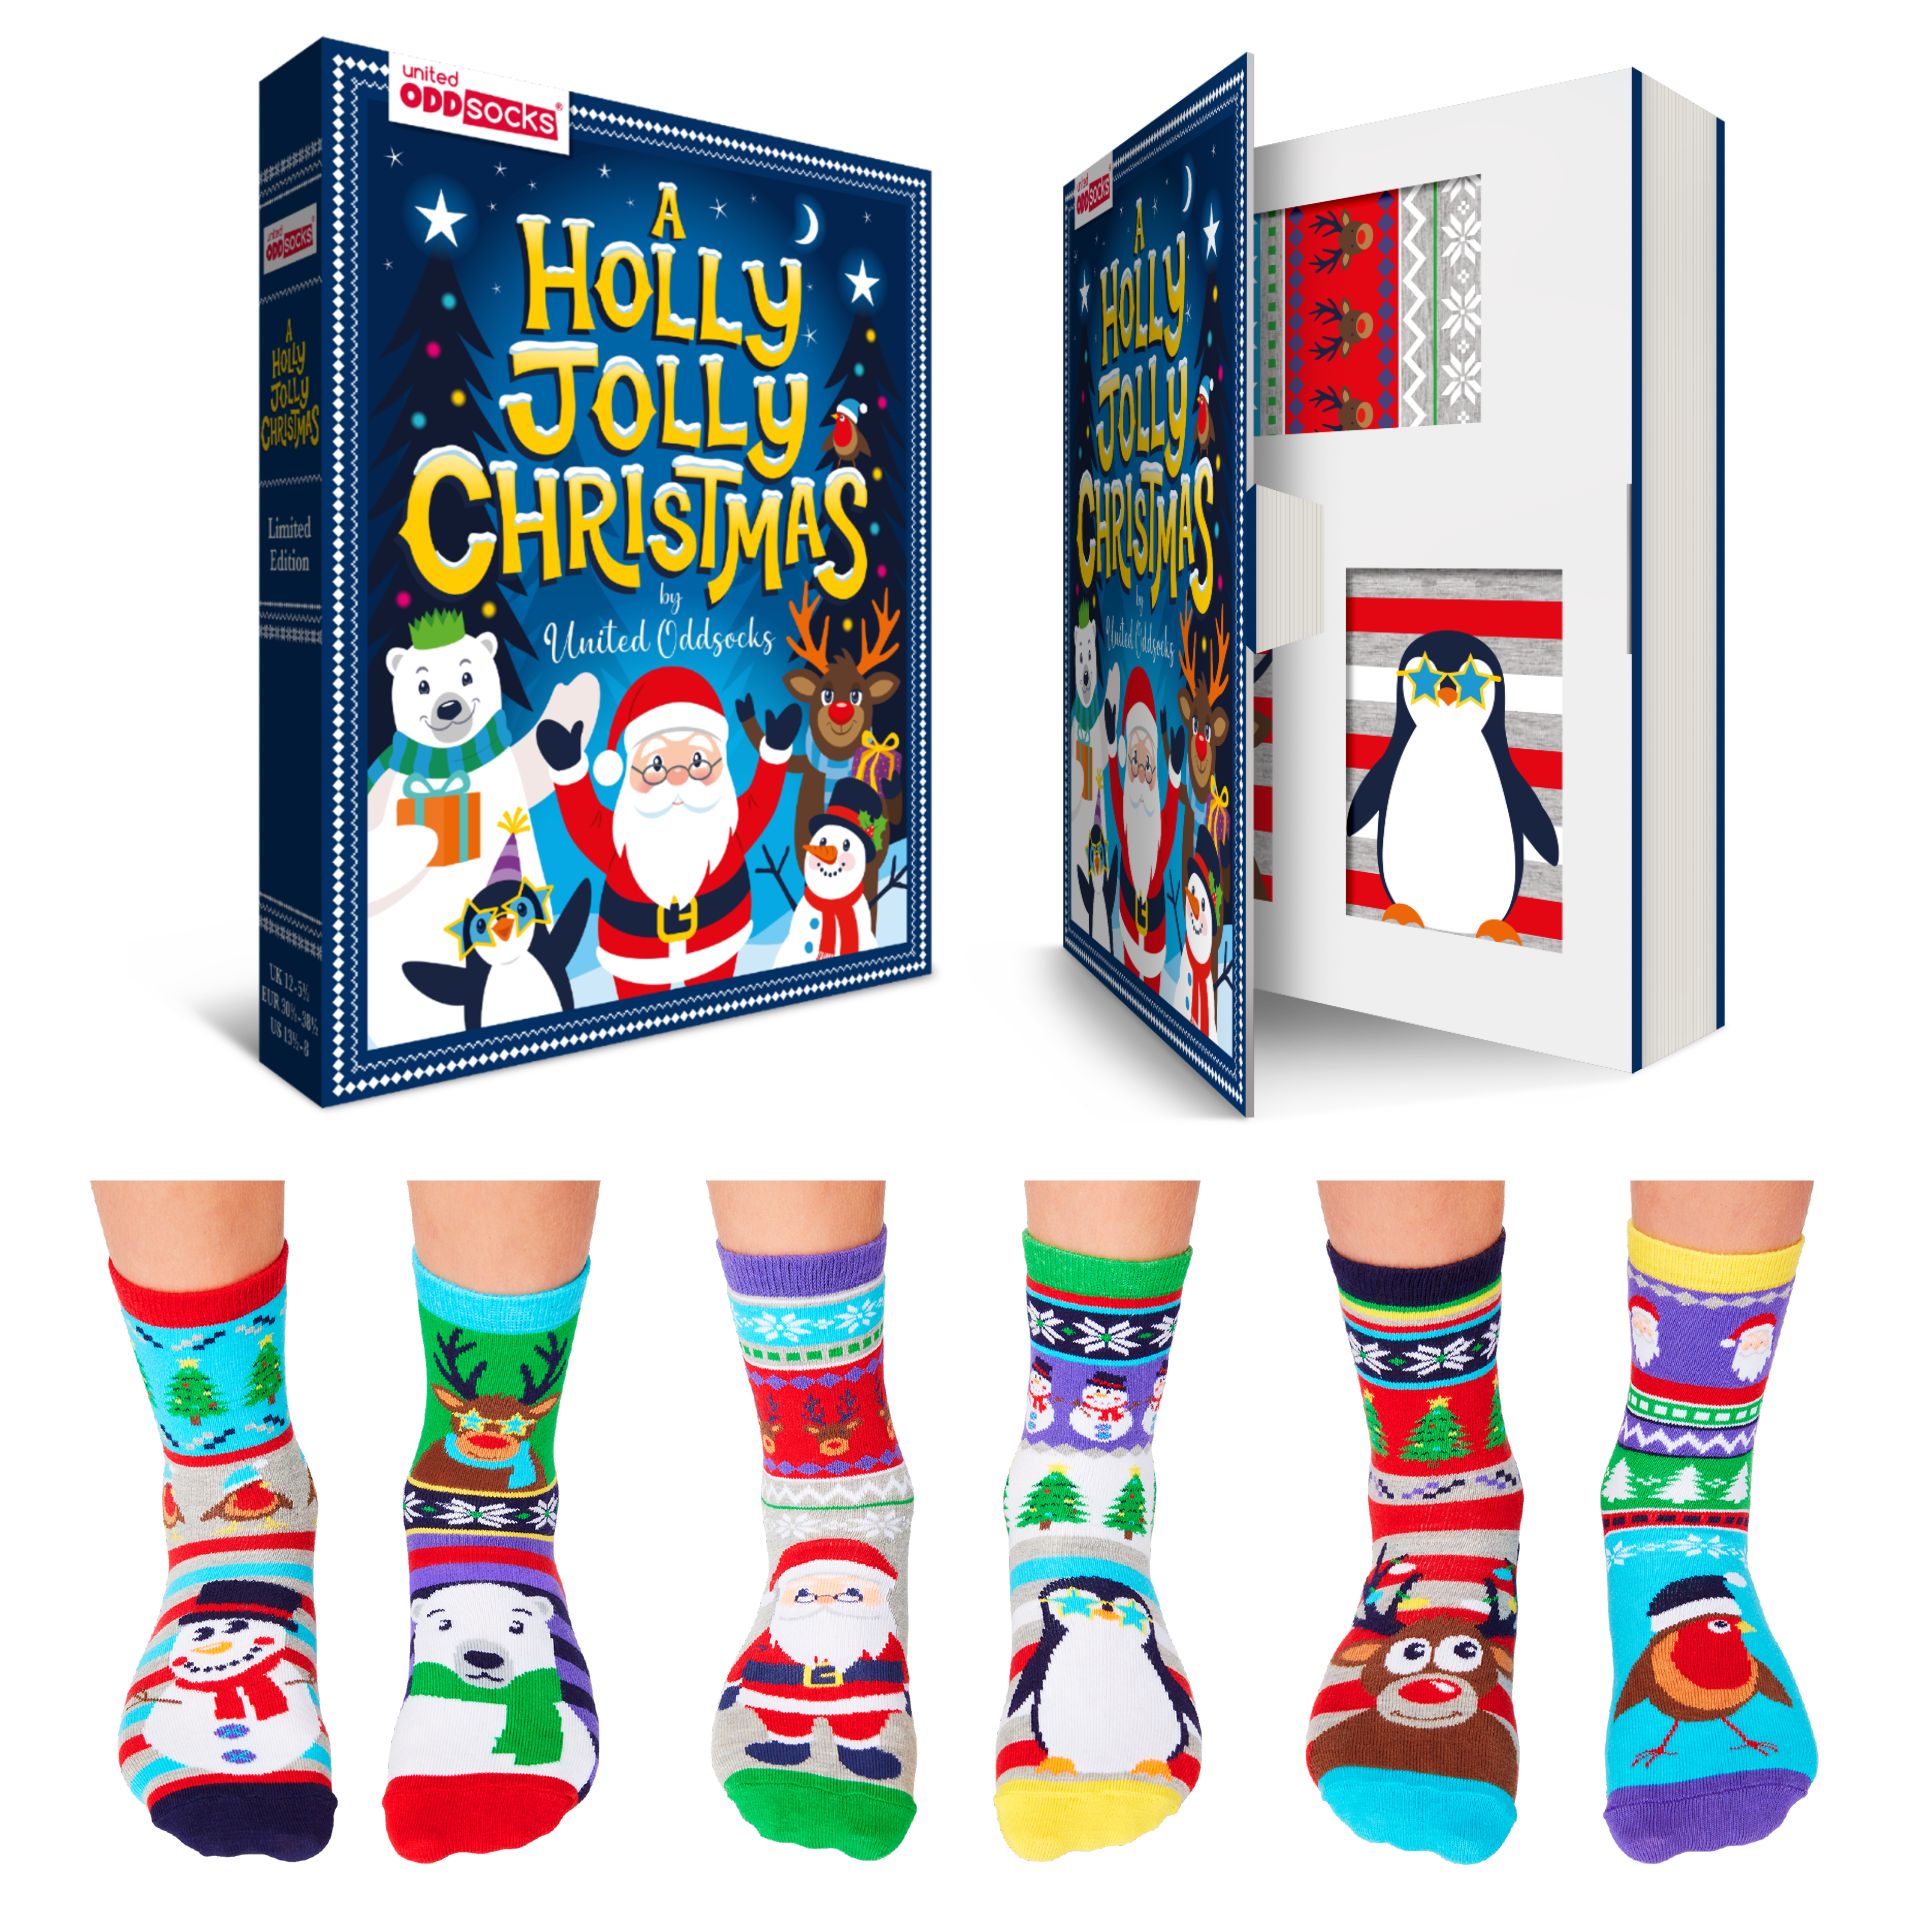 United Oddsocks Children's Boxed Set of Christmas Themed Socks